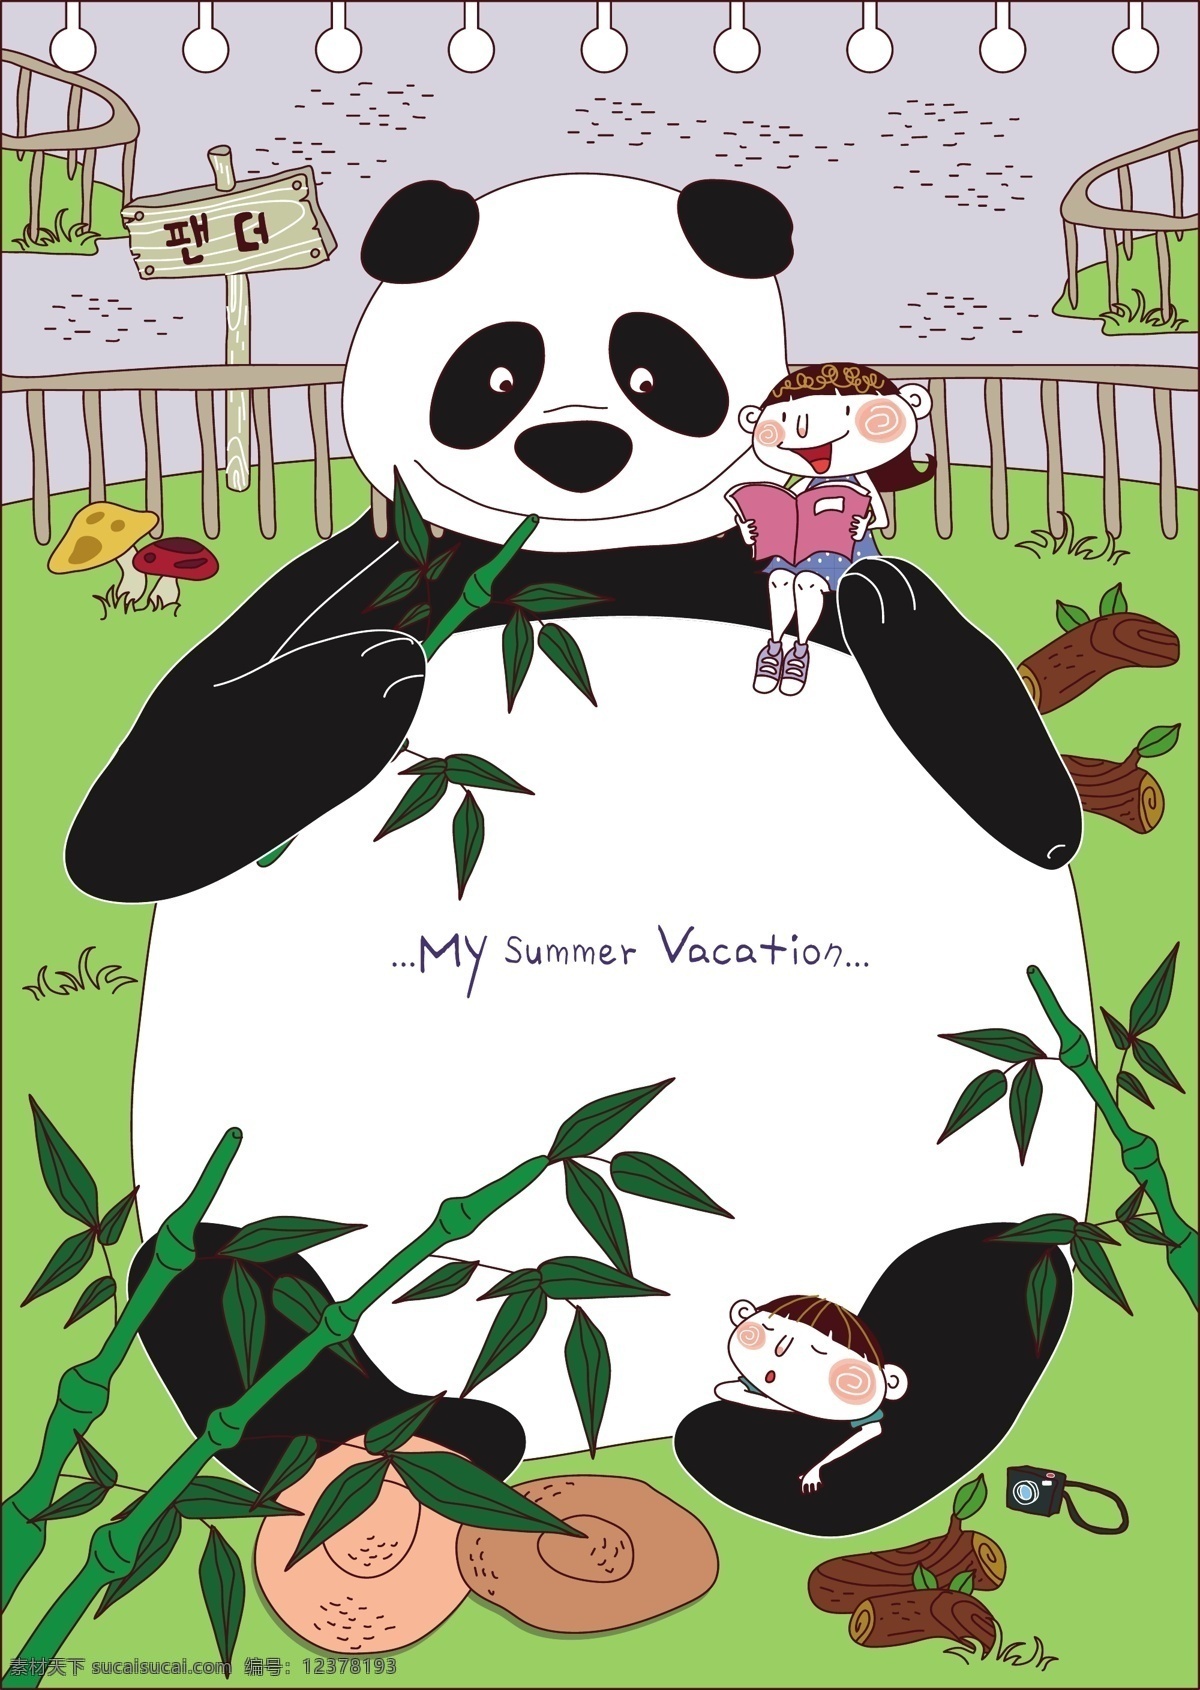 动物园大熊猫 背景素材 插画 大熊猫 动物园 儿童世界 卡通 卡通人物 卡通设计 卡通娃娃 卡通玩偶 吃竹子 竹林 梦幻 童话世界 梦想世界 矢量图 矢量人物